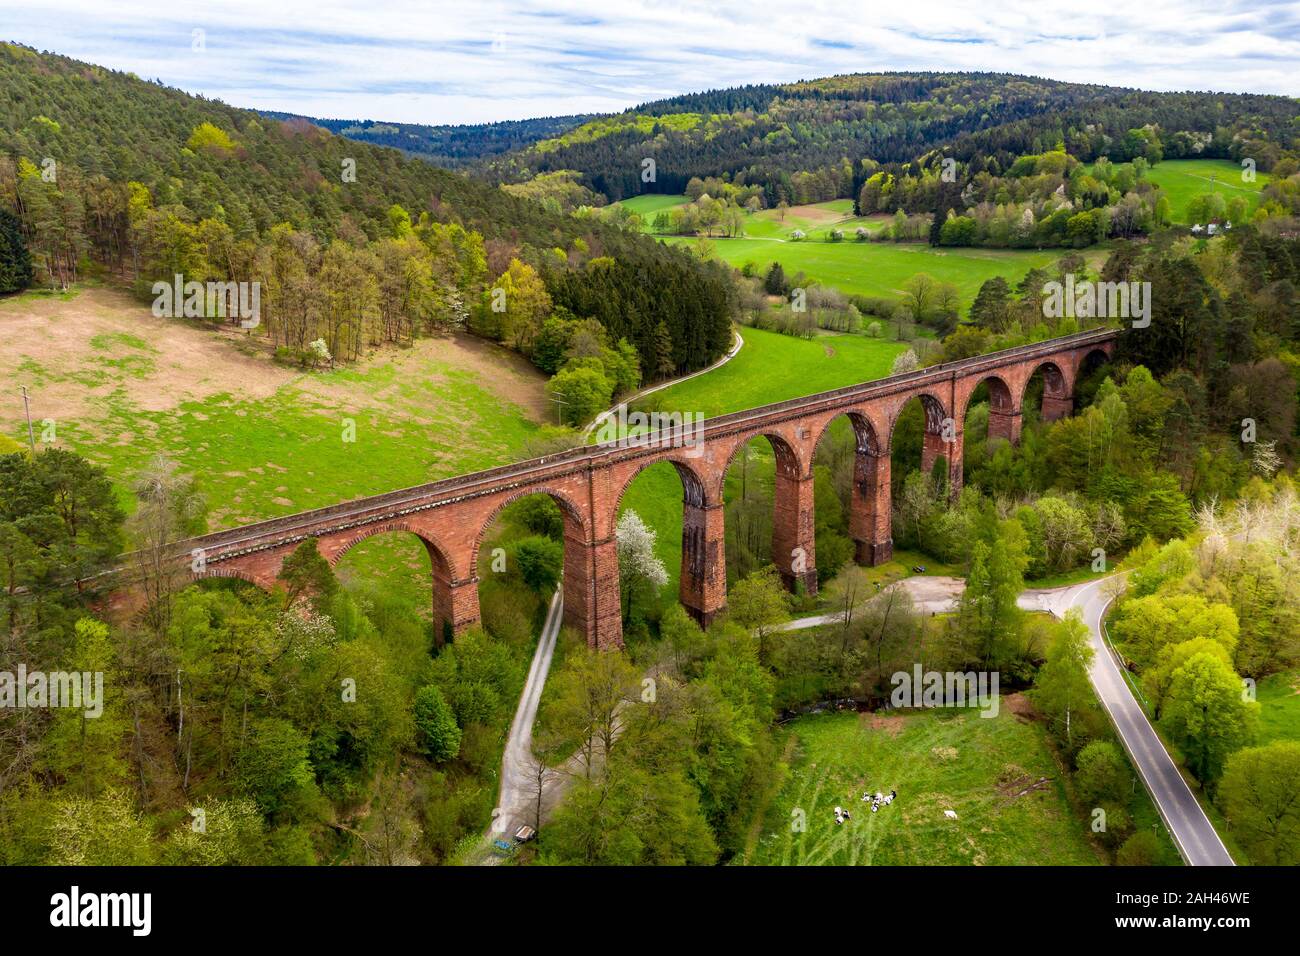 Germania, Hesse, Erbach, vista aerea del viadotto Himbachel Foto Stock